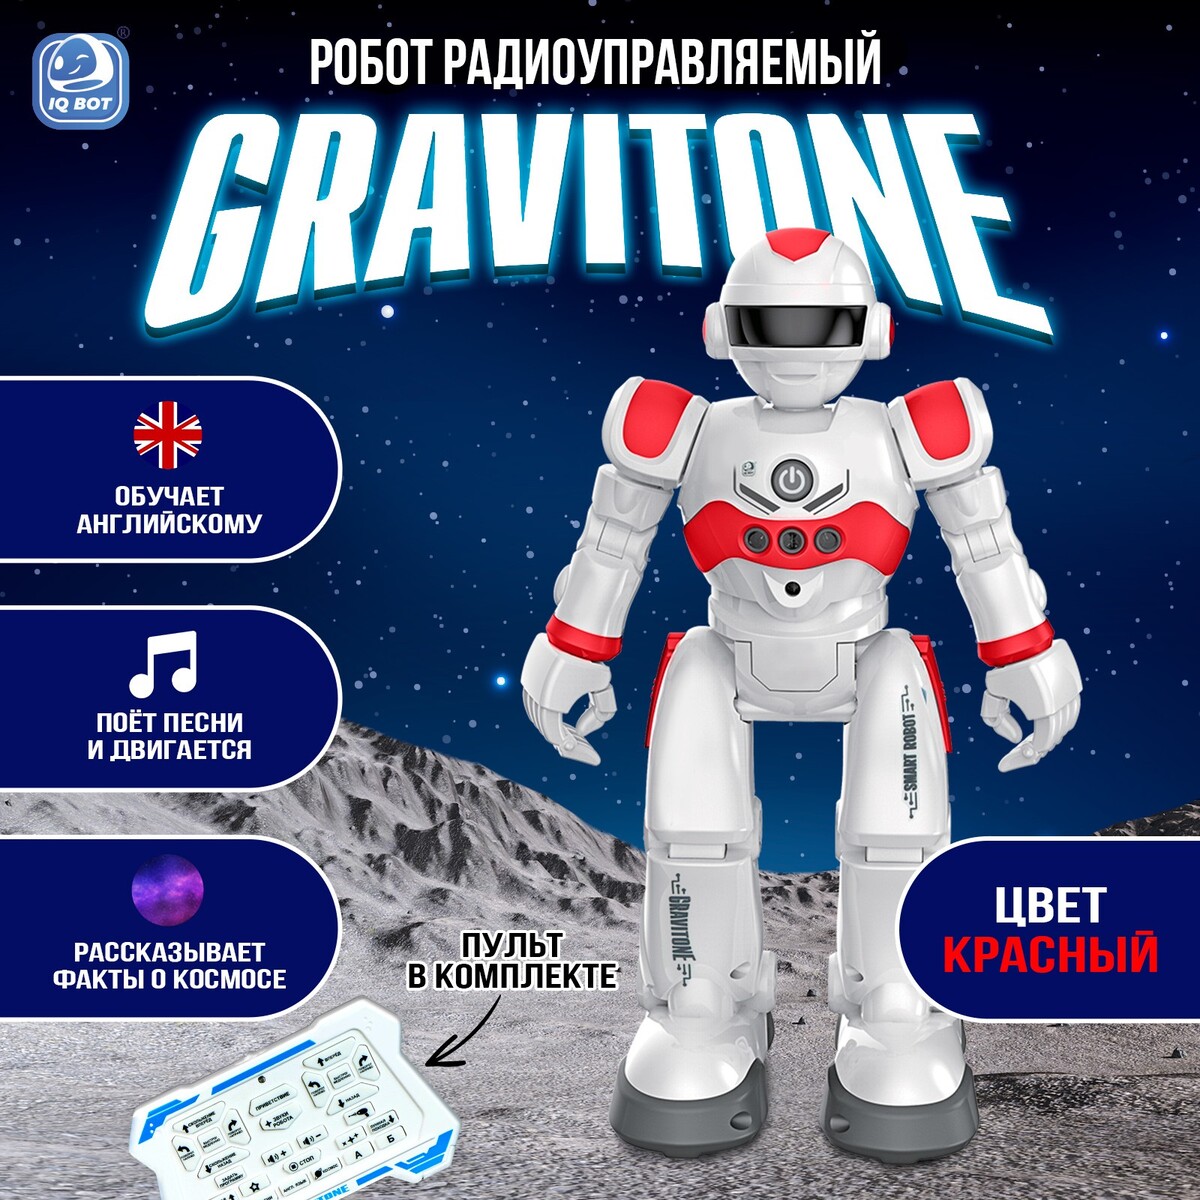 Робот радиоуправляемый iq bot gravitone, русское озвучивание, цвет красный робот abtoys металлический красный c 00340 red